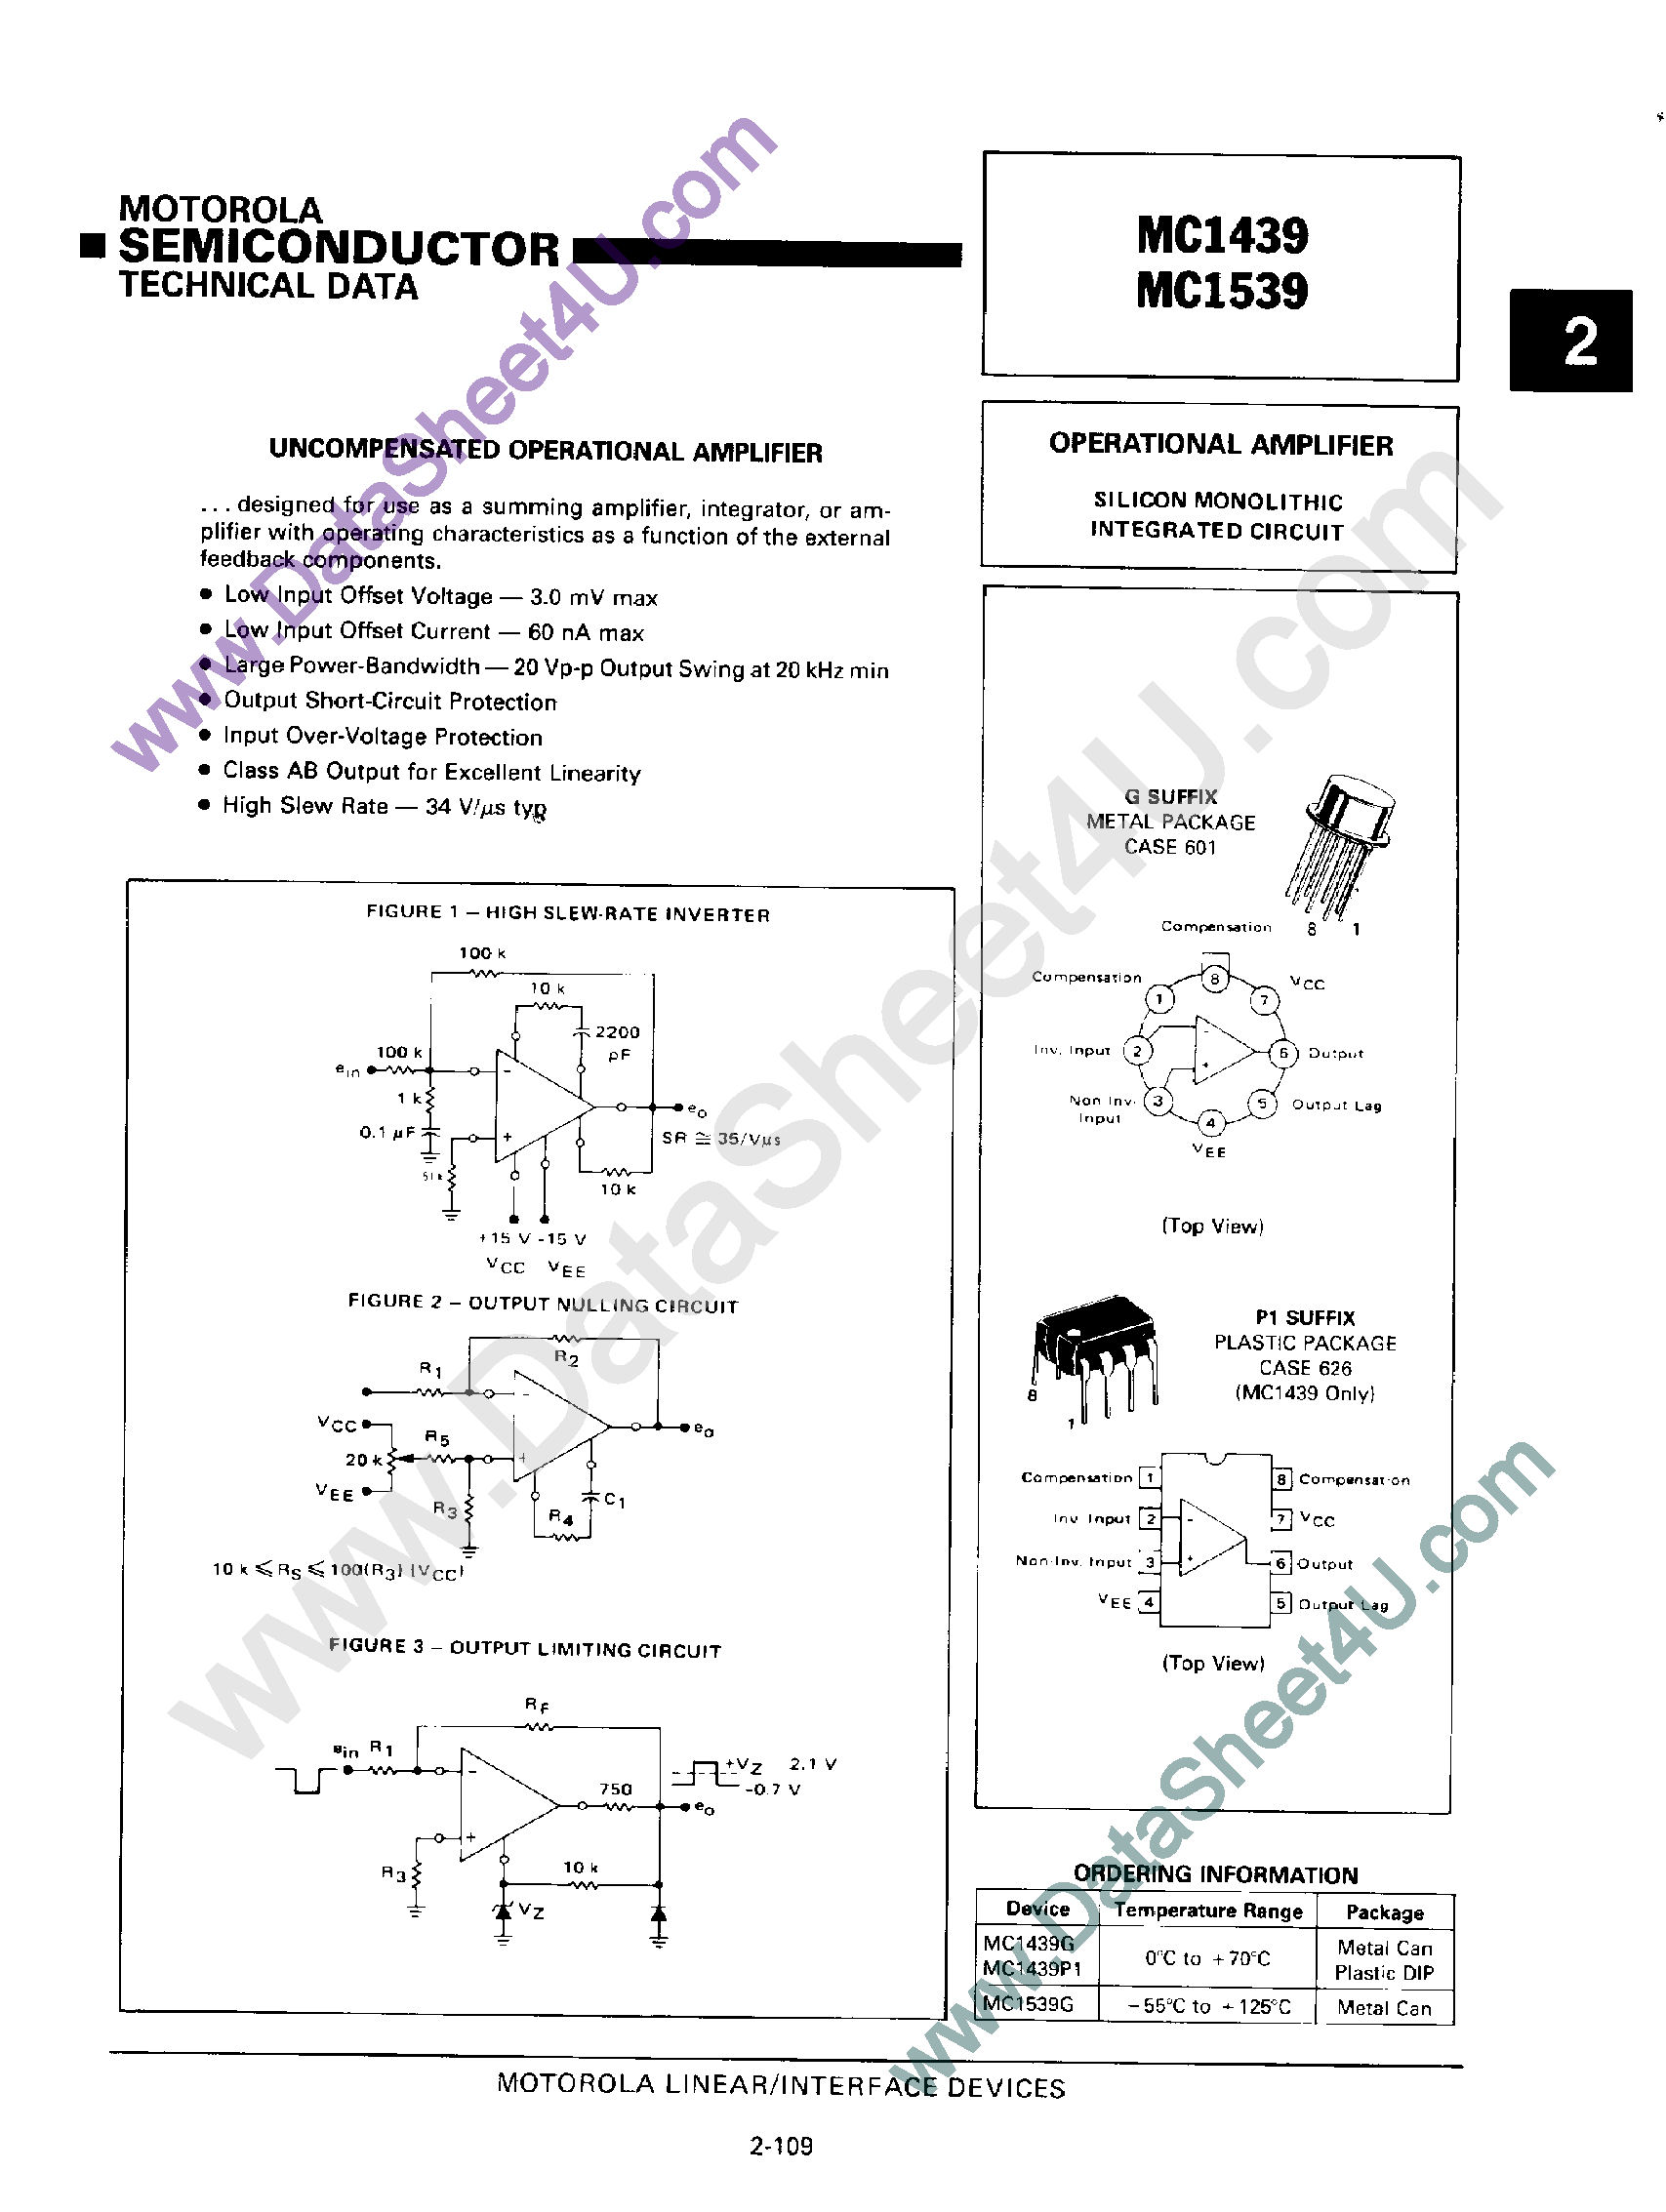 Datasheet MC1439 - (MC1439 / MC1539) Uncompensated Operational Amplifier page 1